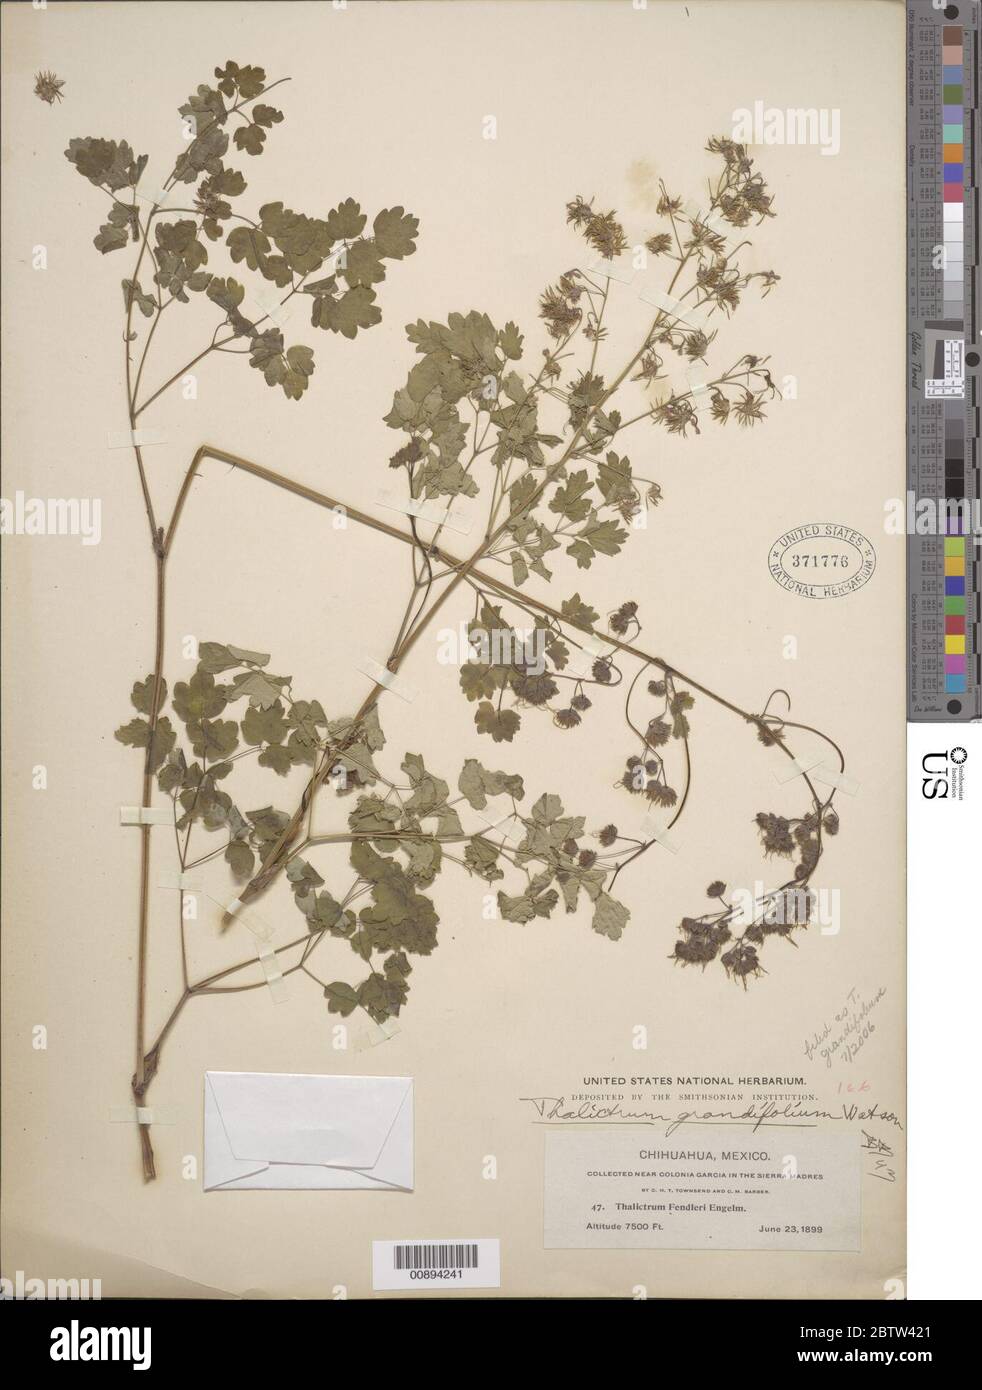 Thalictrum grandifolium S Watson. Stock Photo